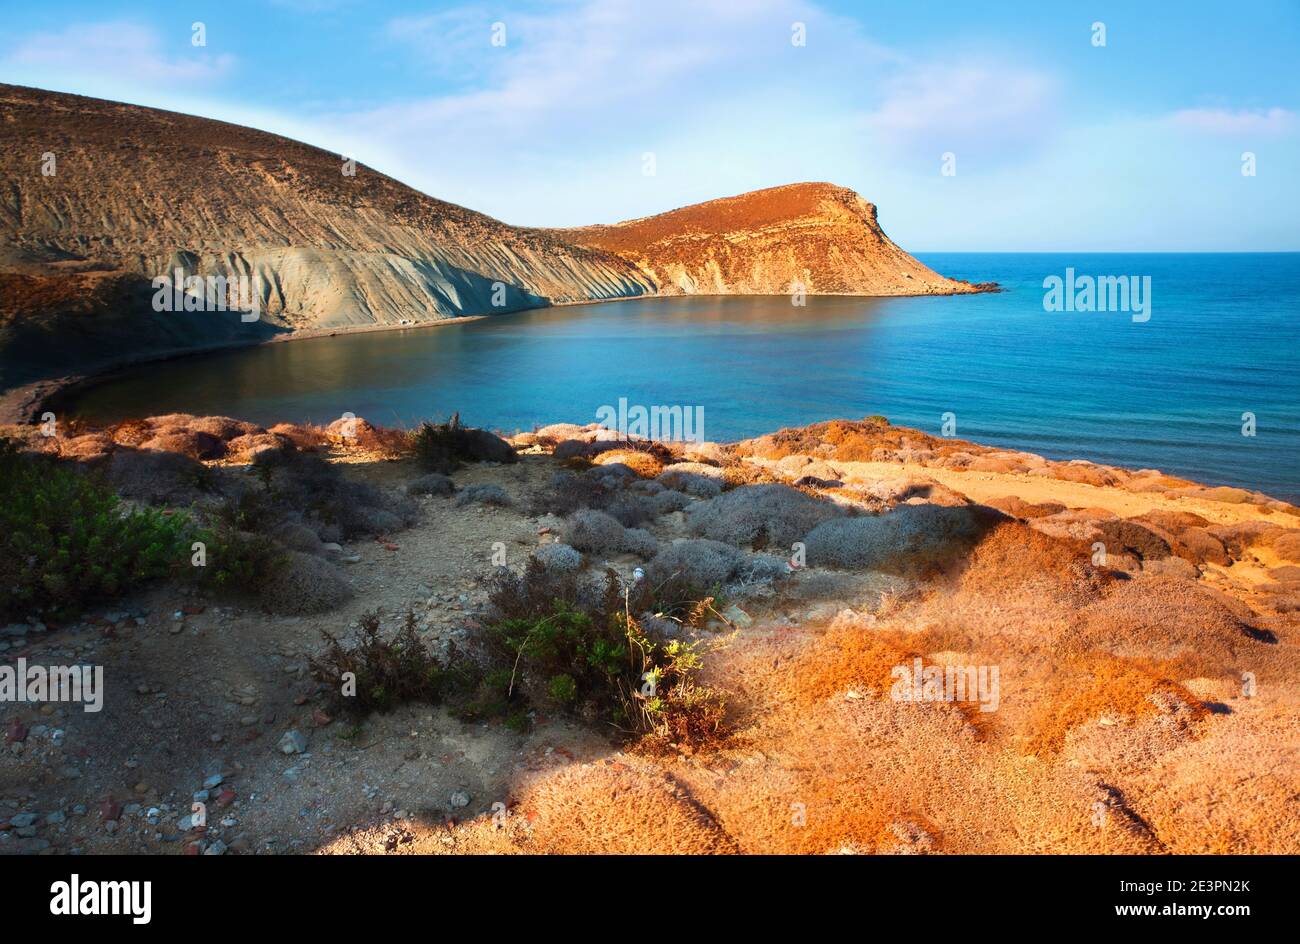 Cap Faraklo sur l'île de Lemnos (appelée aussi Limnos), Grèce. Baie bleue, rochers, collines et buissons de thym en journée ensoleillée à la fin de l'été. Banque D'Images